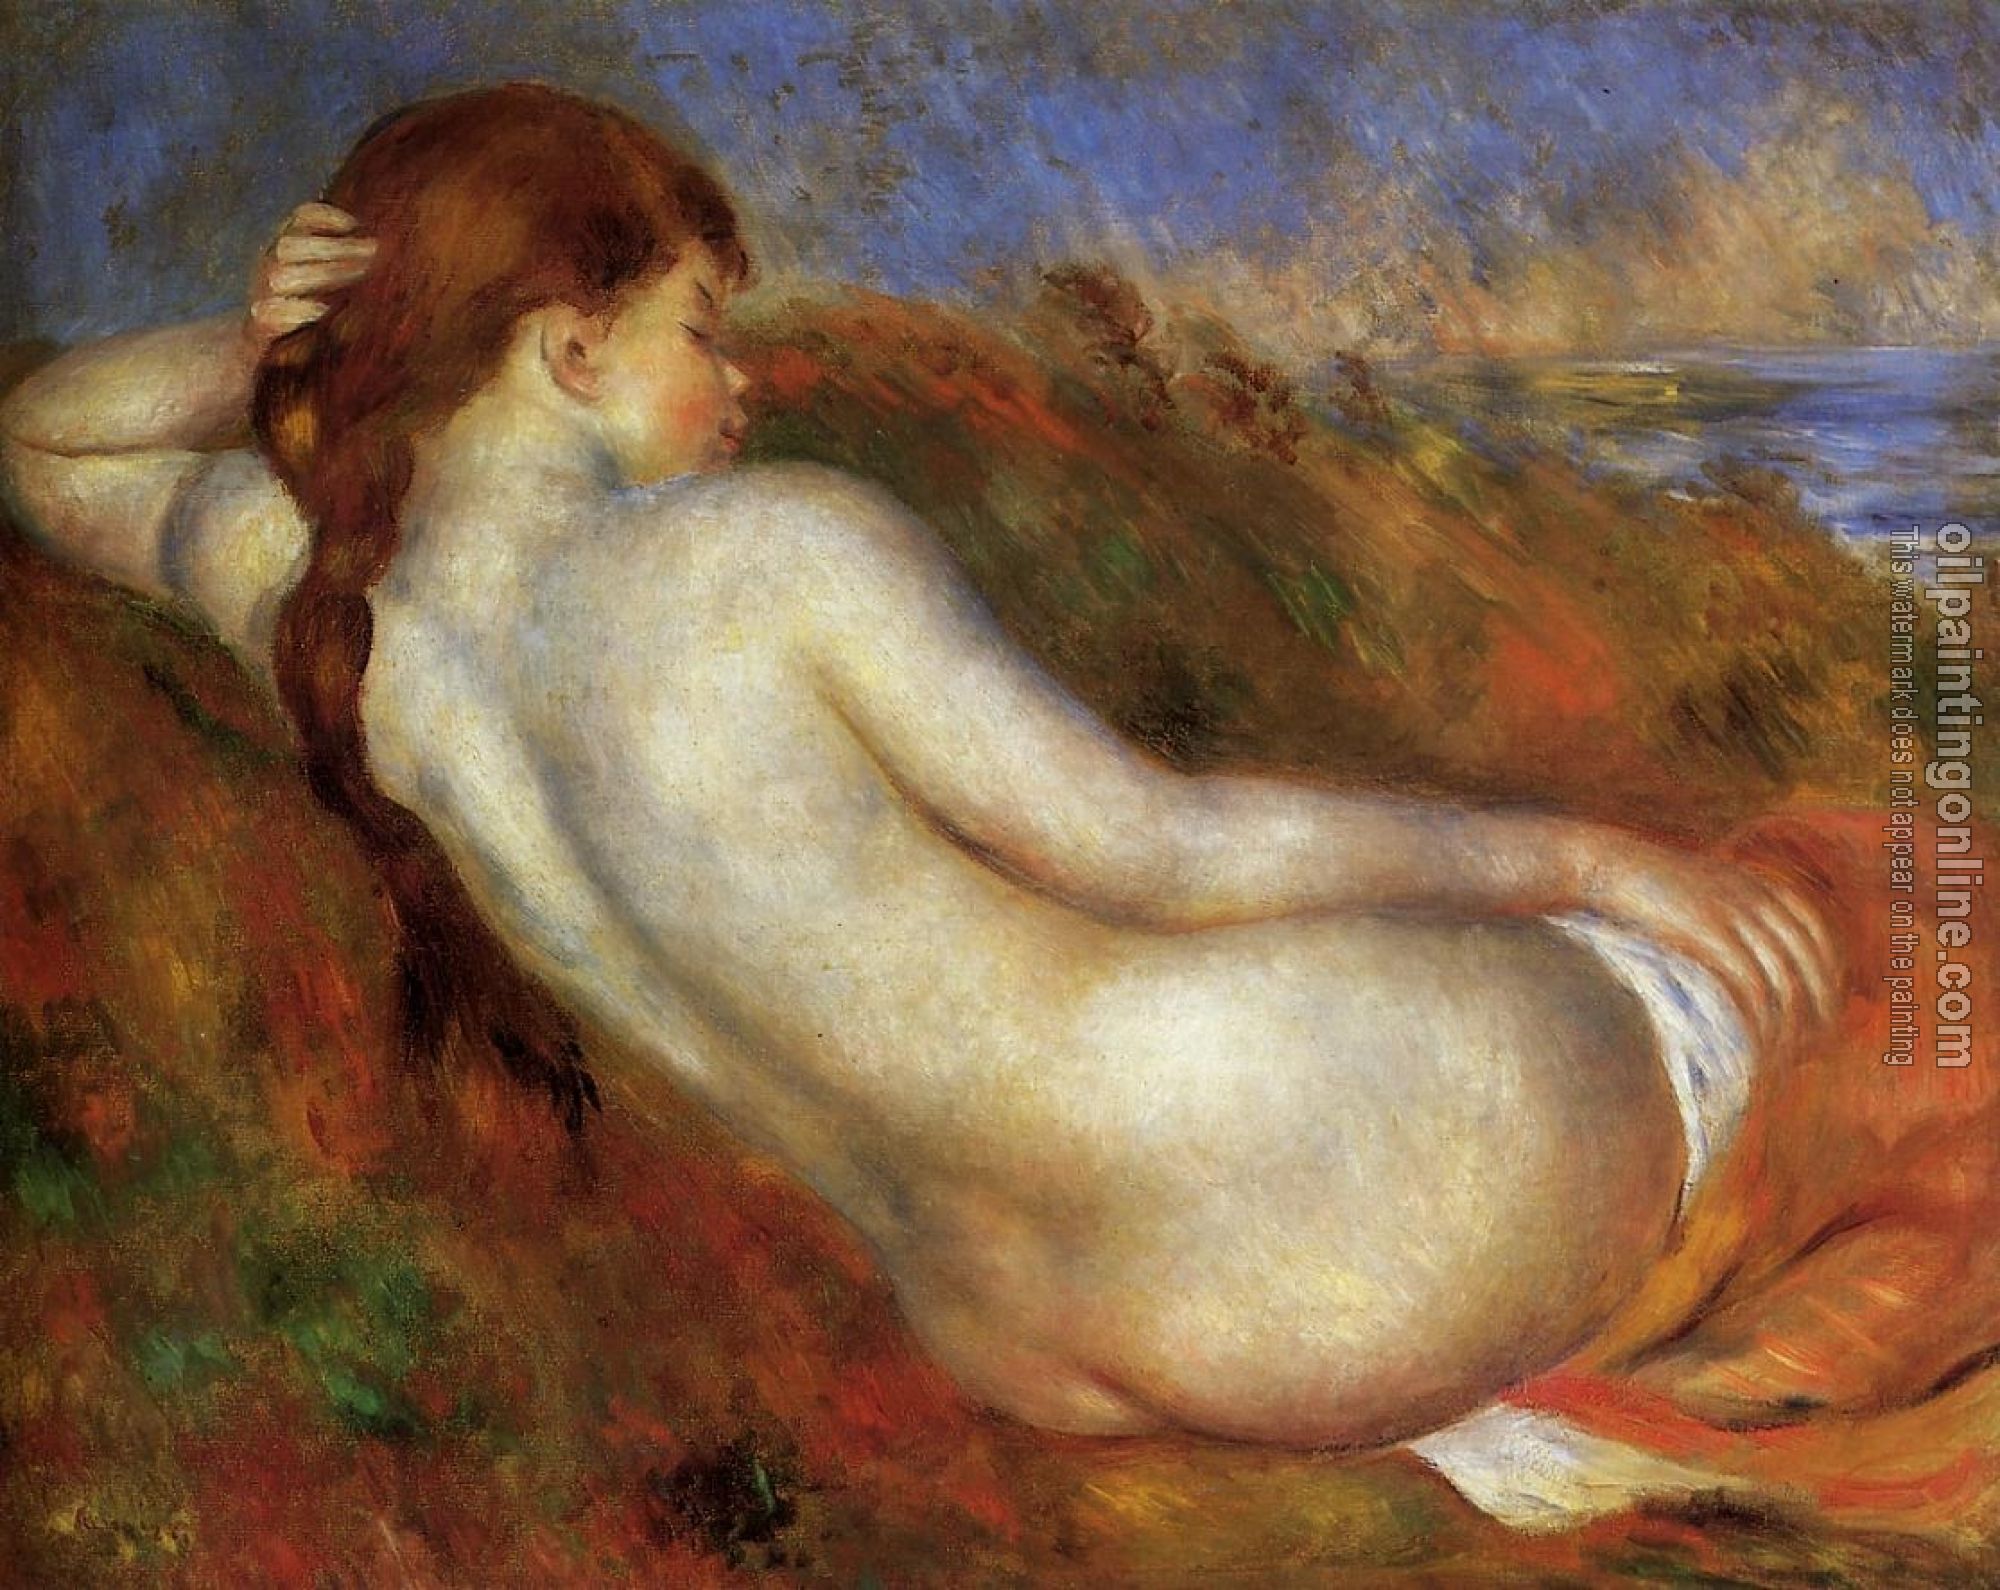 Renoir, Pierre Auguste - Reclining Nude